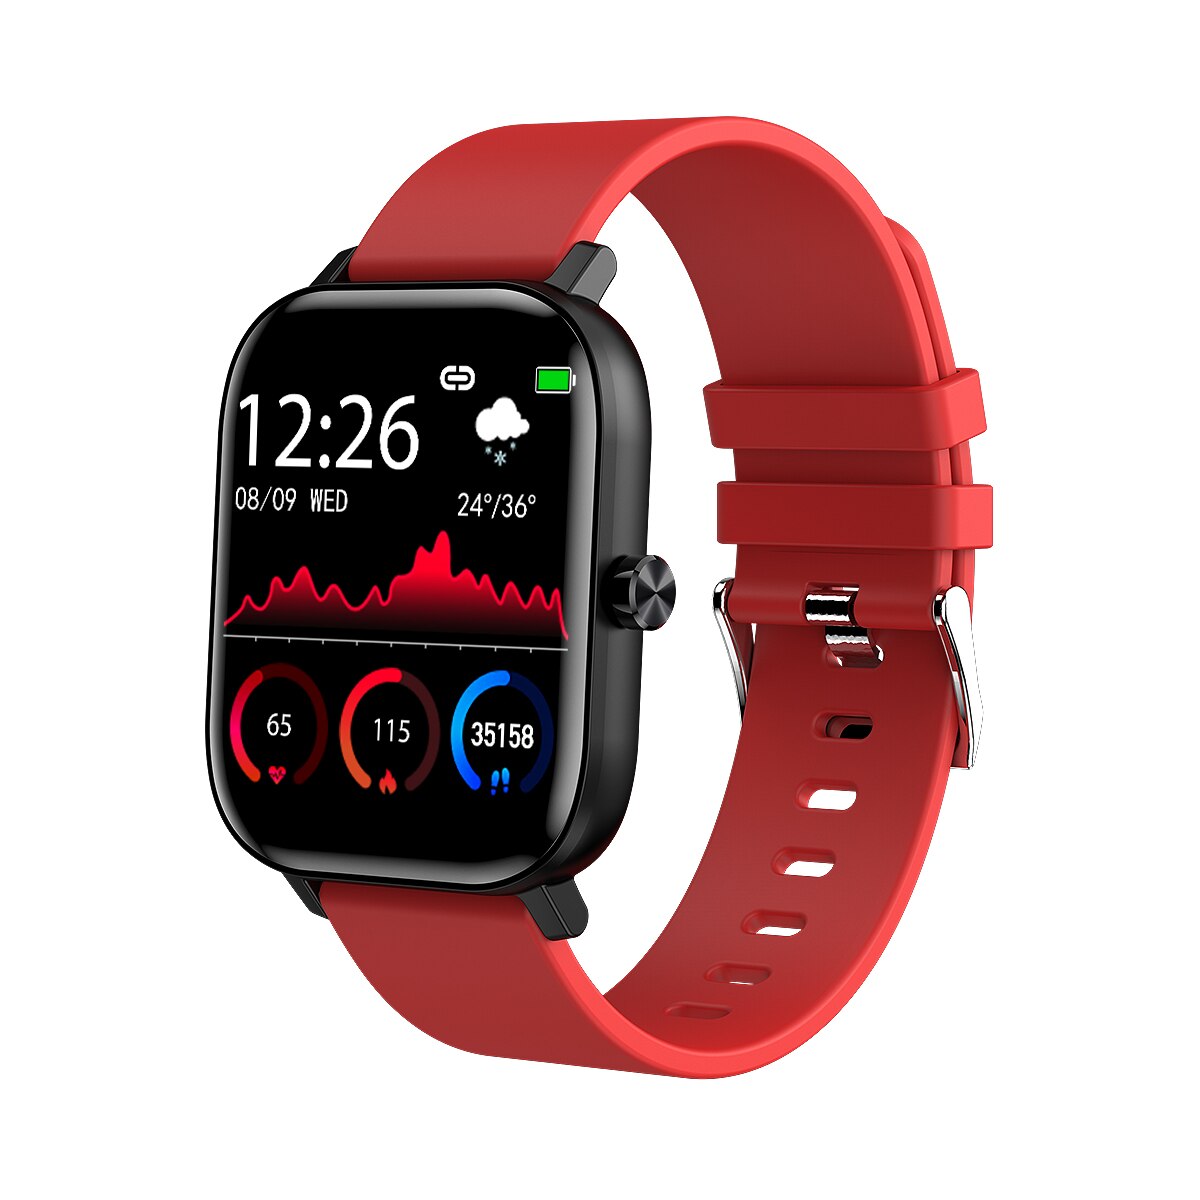 Clever Uhr Männer Frauen I10 1.54 "voll berühren Bildschirm Bluetooth Anruf Smartwatch Herz Bewertung Blutdruck Monitor für Android IOS: rot Silikon